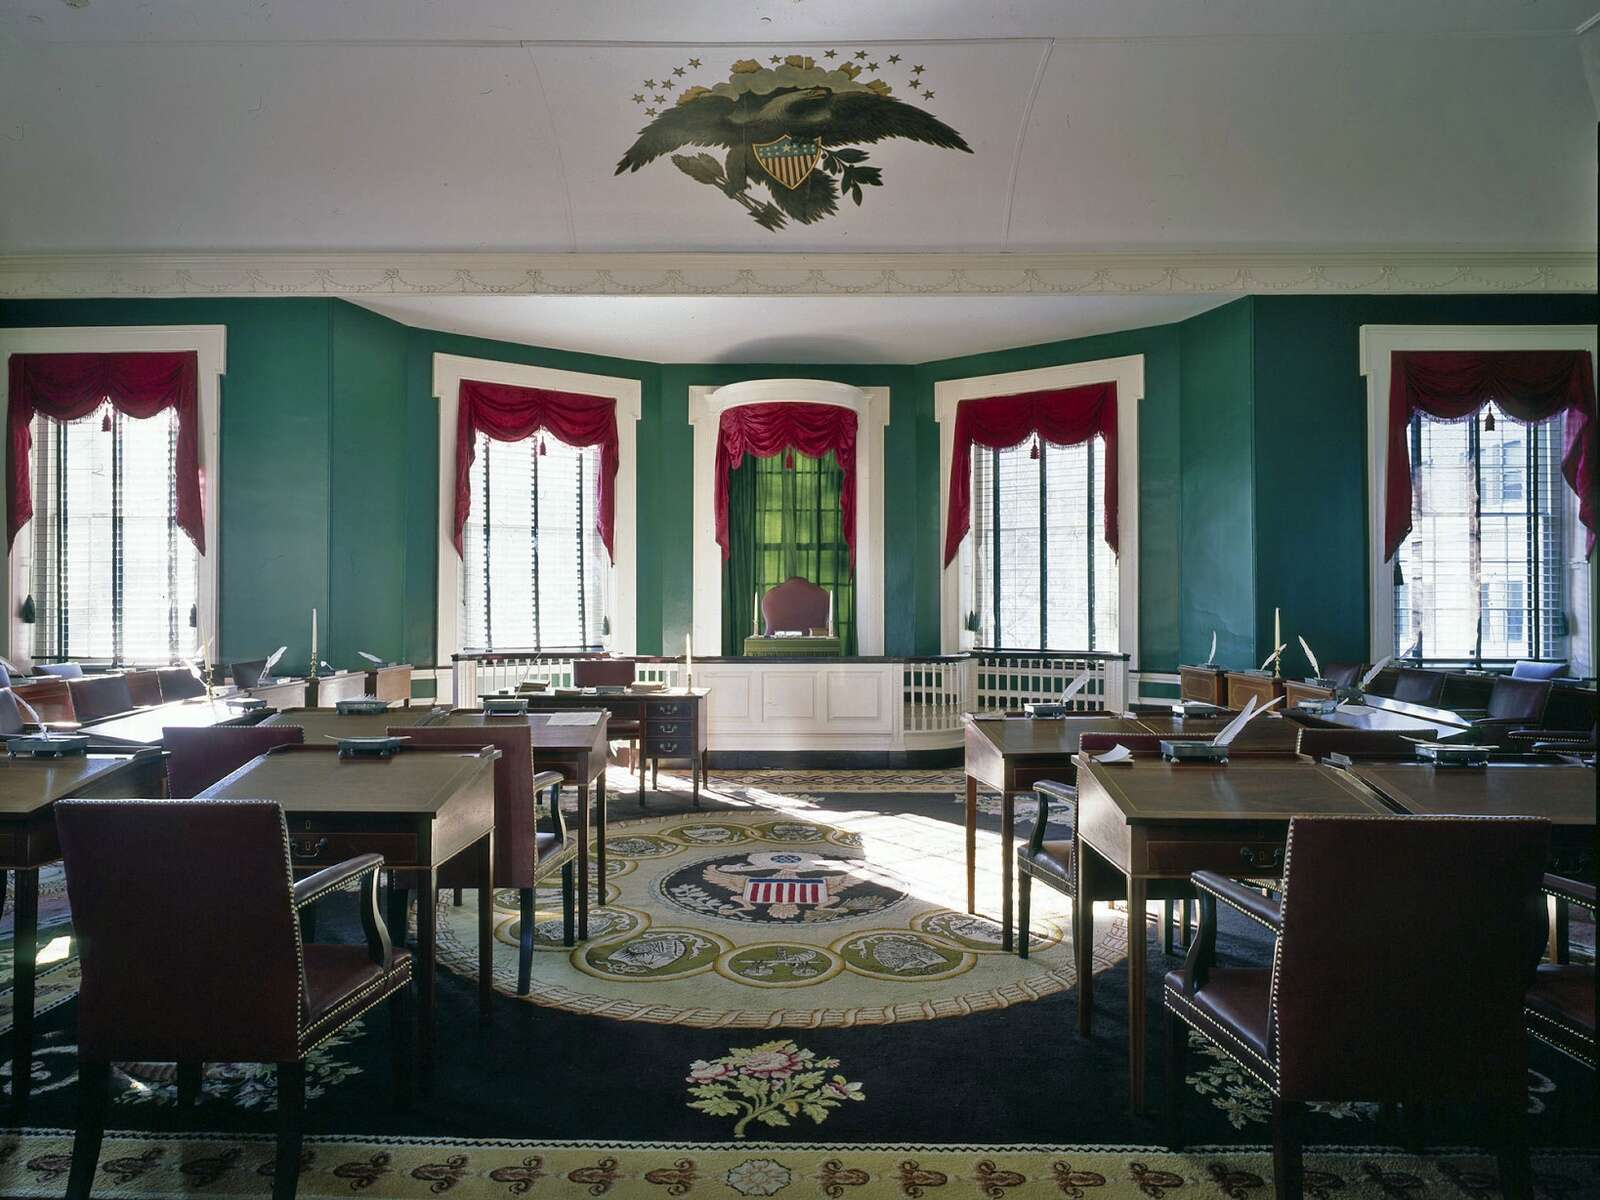 The United States Senate Chamber